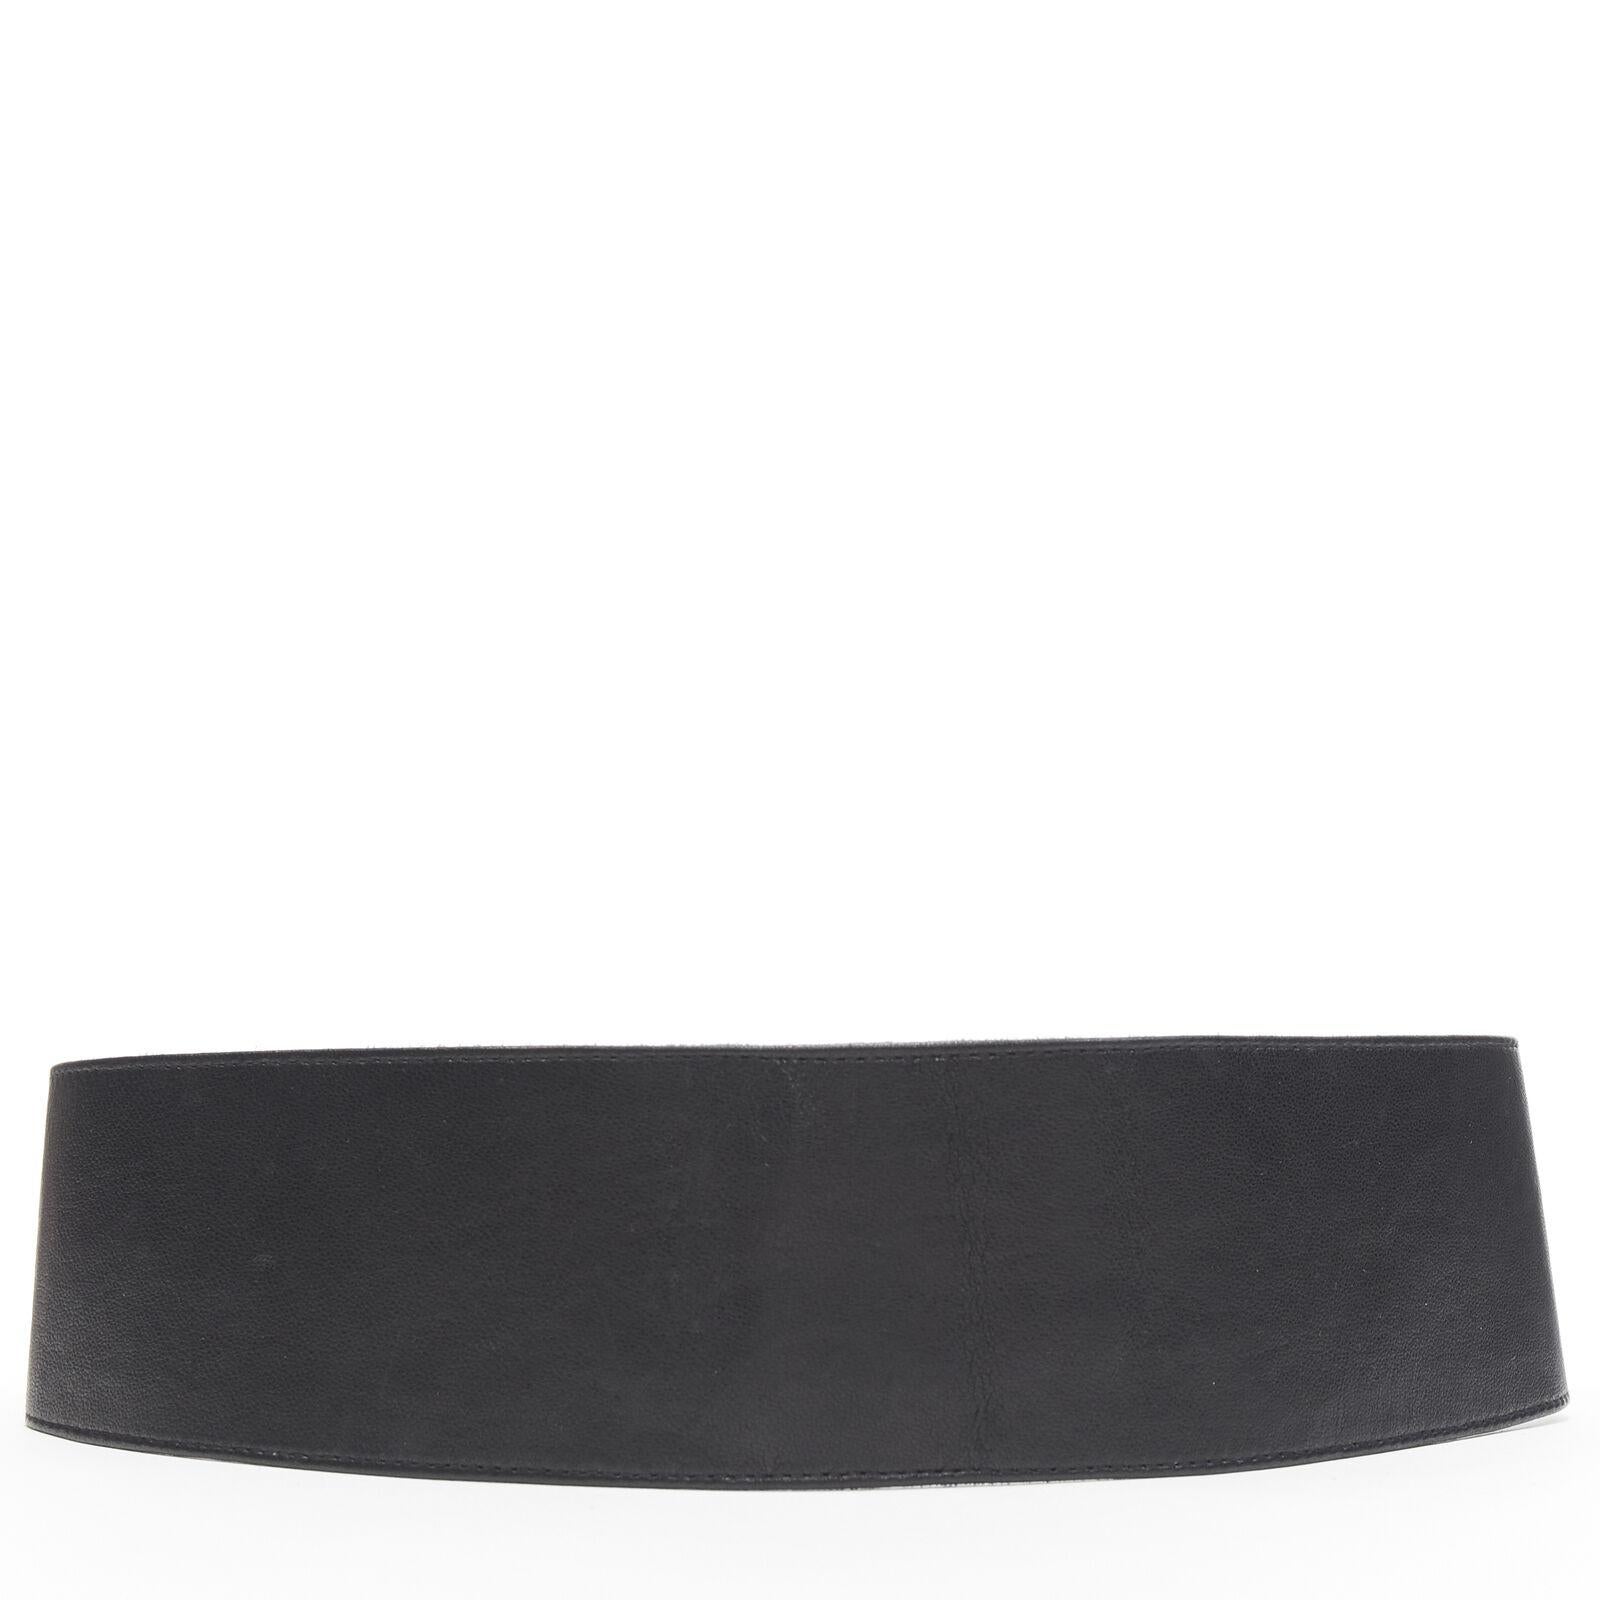 Black OSCAR DE LA RENTA black leather strass crystal jewel embellished belt S 27